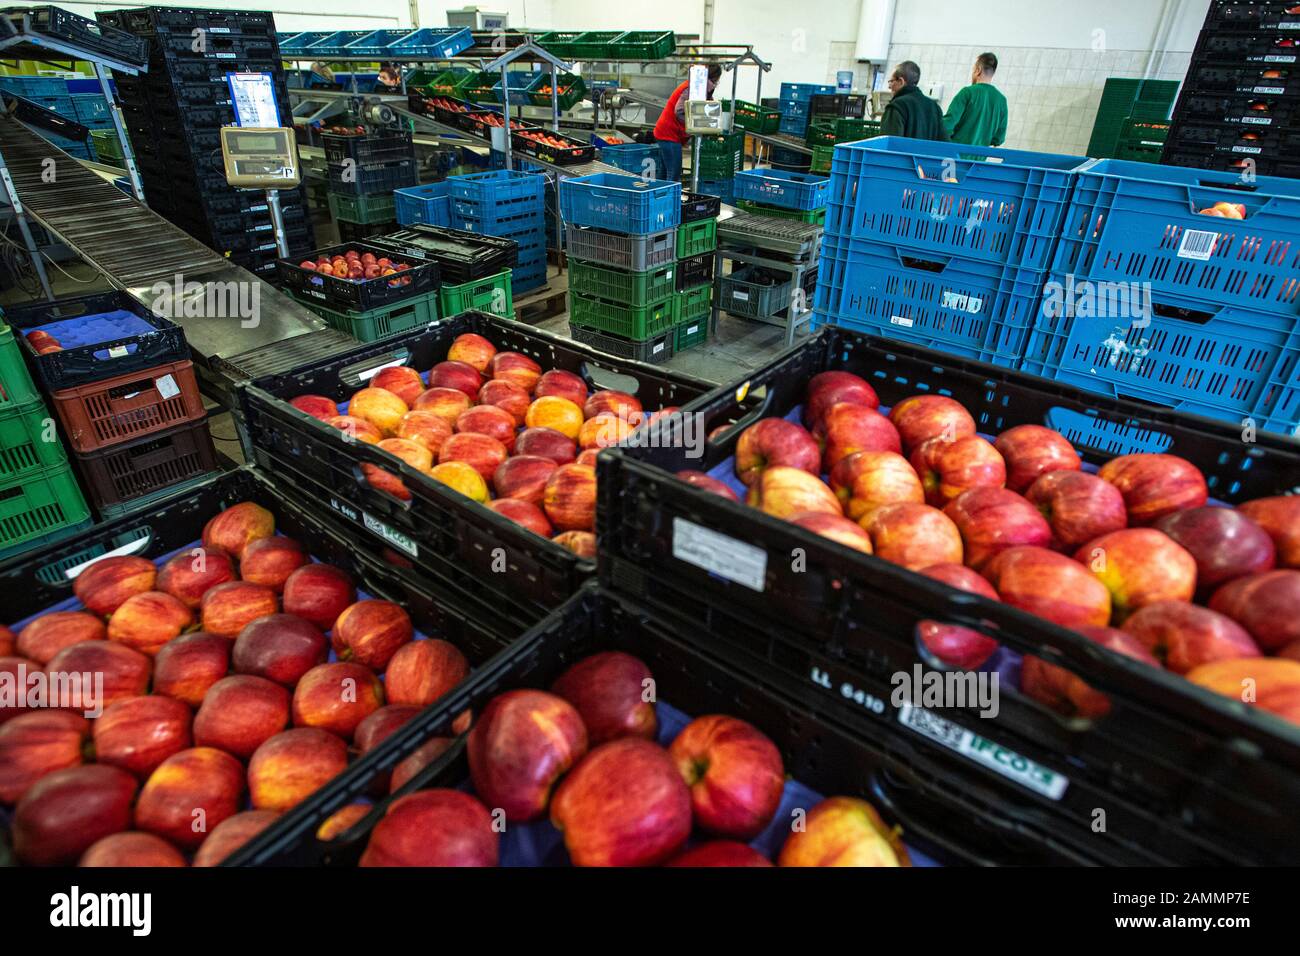 La récolte de fruits tchèques a chuté de 27 pour cent à 129,911 tonnes l'an dernier, affectée par les gelées de printemps, selon les calculs de l'Institut central De Surveillance et d'essais agricoles mis à la disposition de la CTK avant le début des Journées Des Producteurs De Fruits. Toutes sortes de fruits sauf les abricots, les framboises et les mûres ont enregistré une baisse.par rapport à la moyenne des récoltes des cinq dernières années, la récolte de l'année dernière a chuté de 18 pour cent. Employés de la ferme tchèque collective à Dolan, République tchèque, 13 janvier 2020. (Ctk Photo/David Tanecek) Banque D'Images